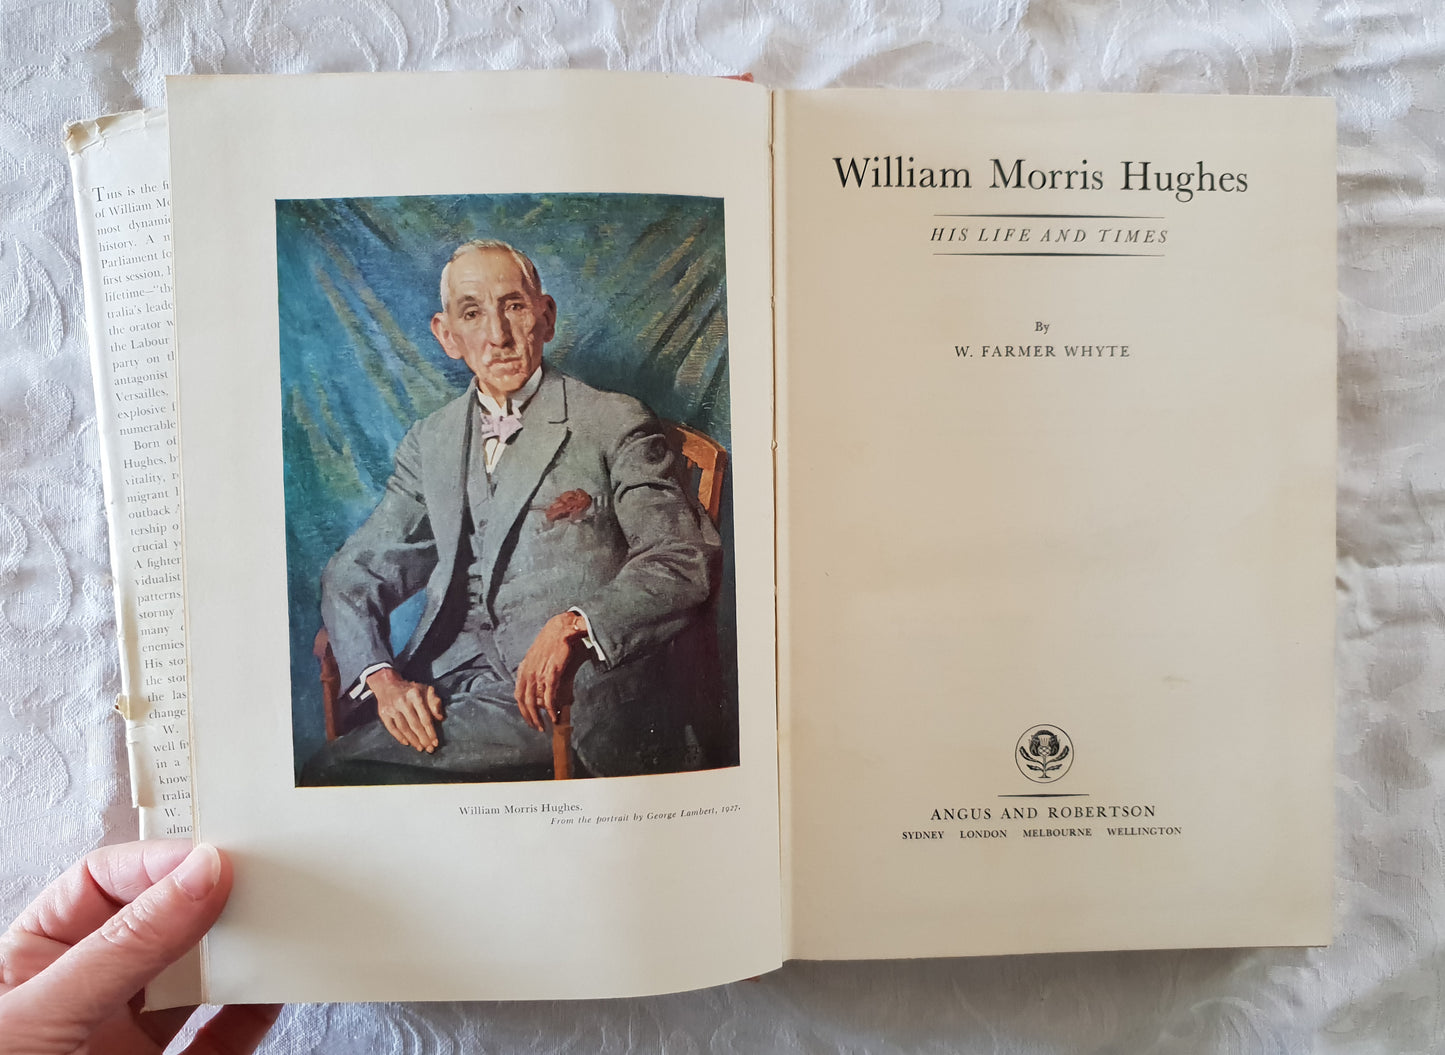 William Morris Hughes by W. Farmer Whyte